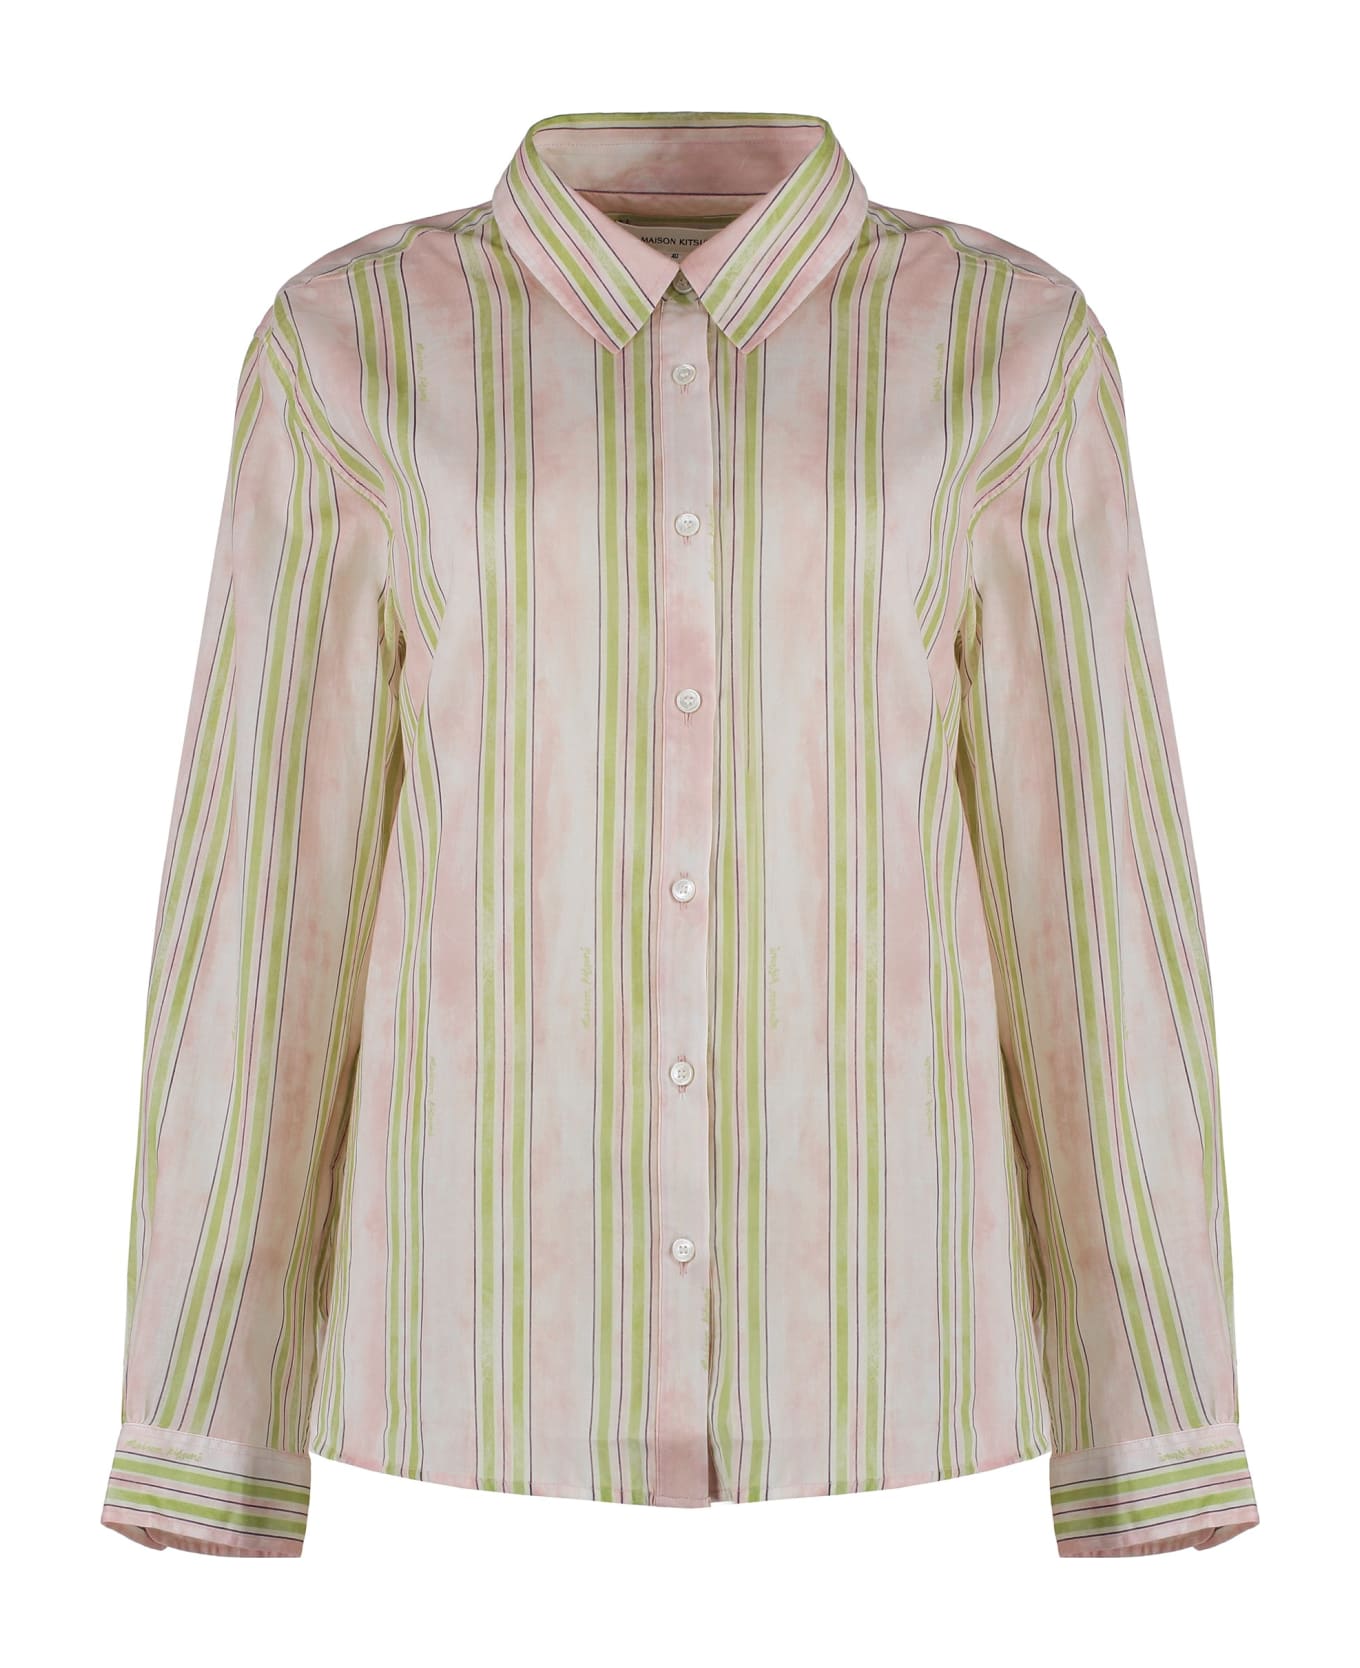 Maison Kitsuné Striped Cotton Shirt - Pink シャツ